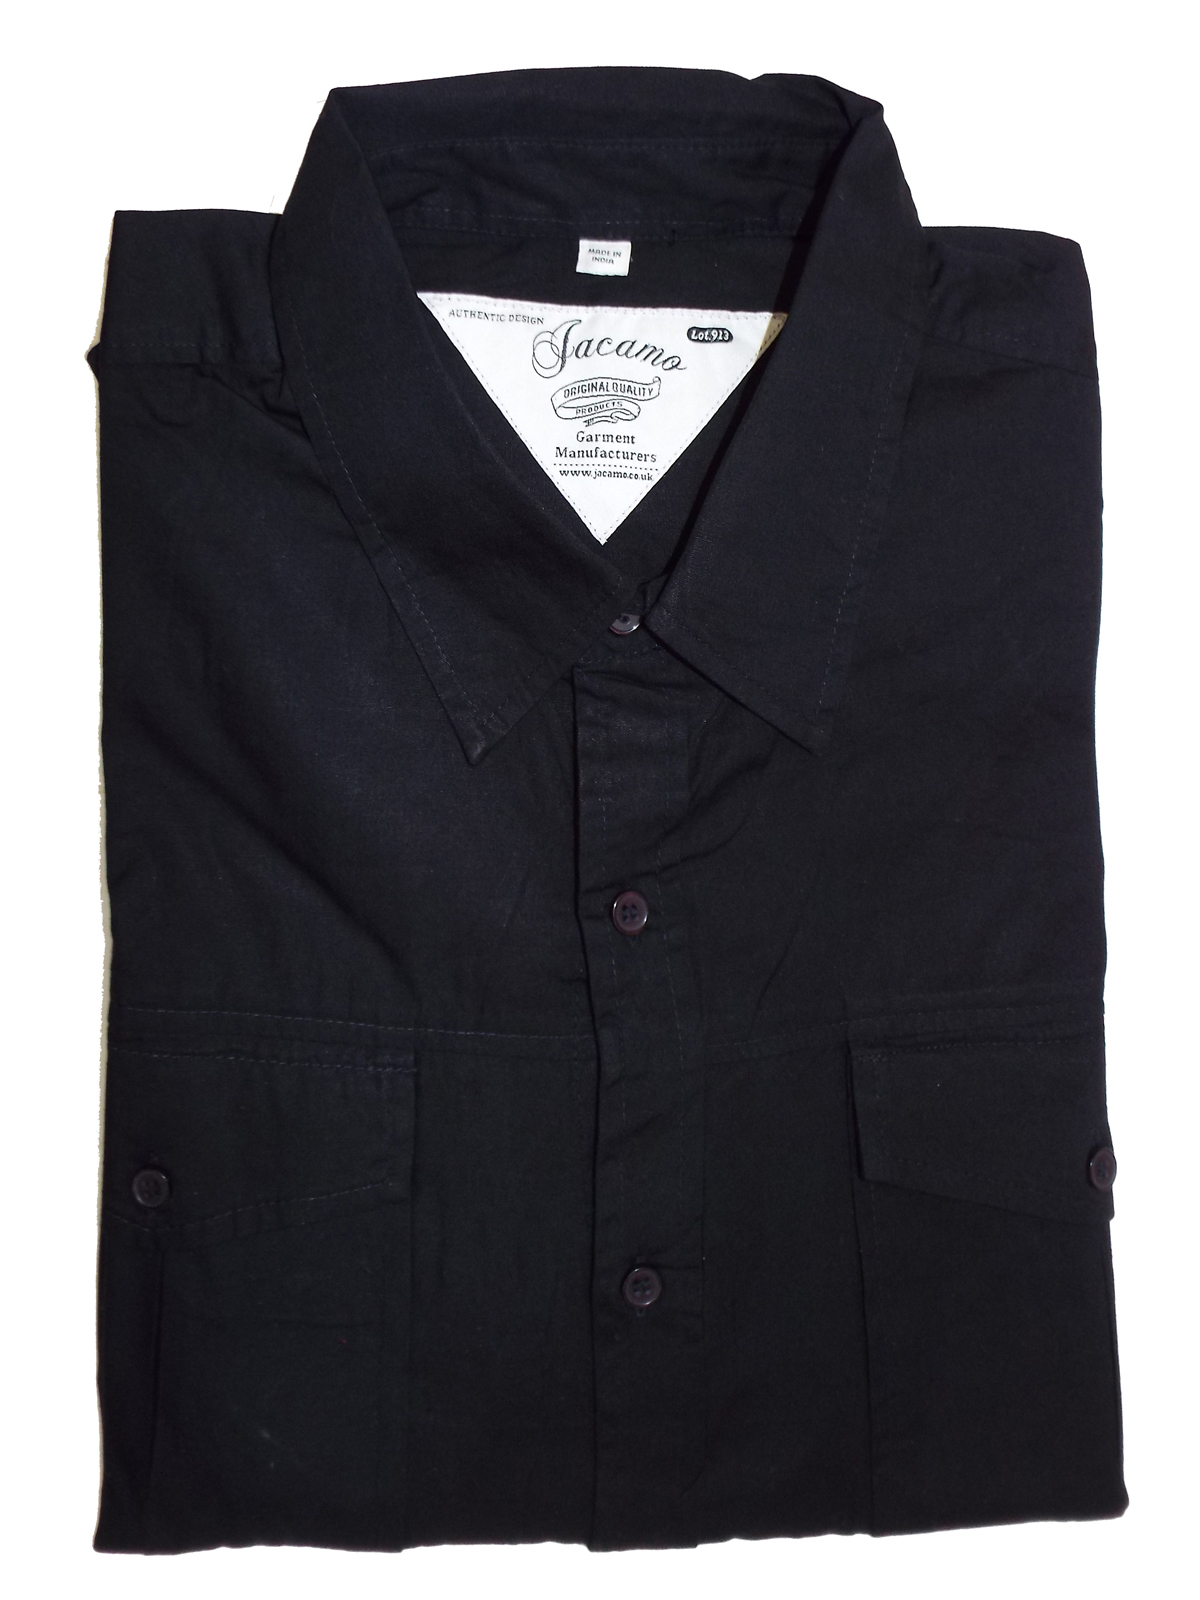 Jacamo - - Jacamo BLACK Mens Pure Cotton Military Shirt - Plus Size ...